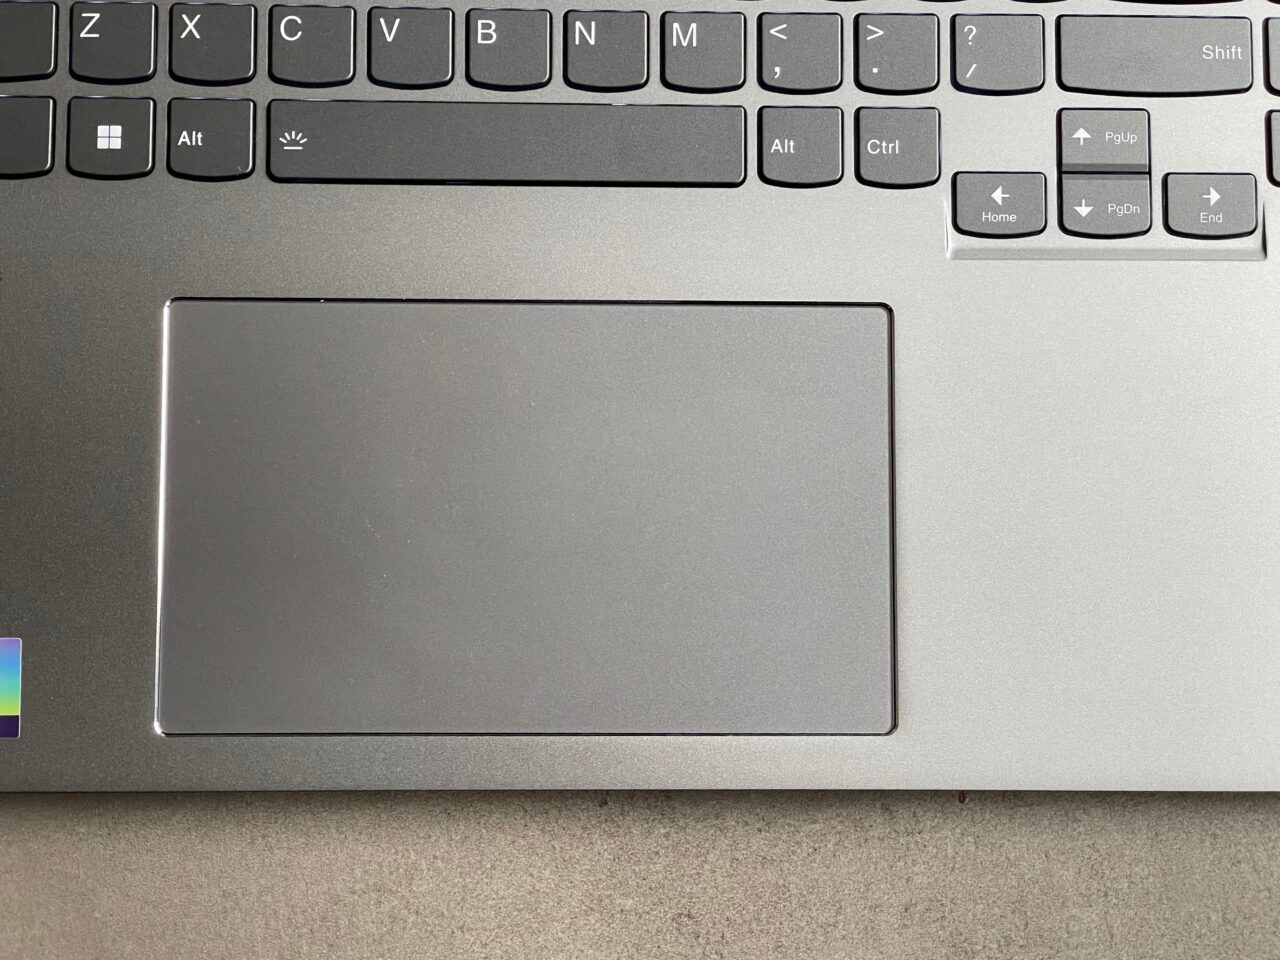 Część klawiatury laptopa i duży touchpad na jednolitym tle.